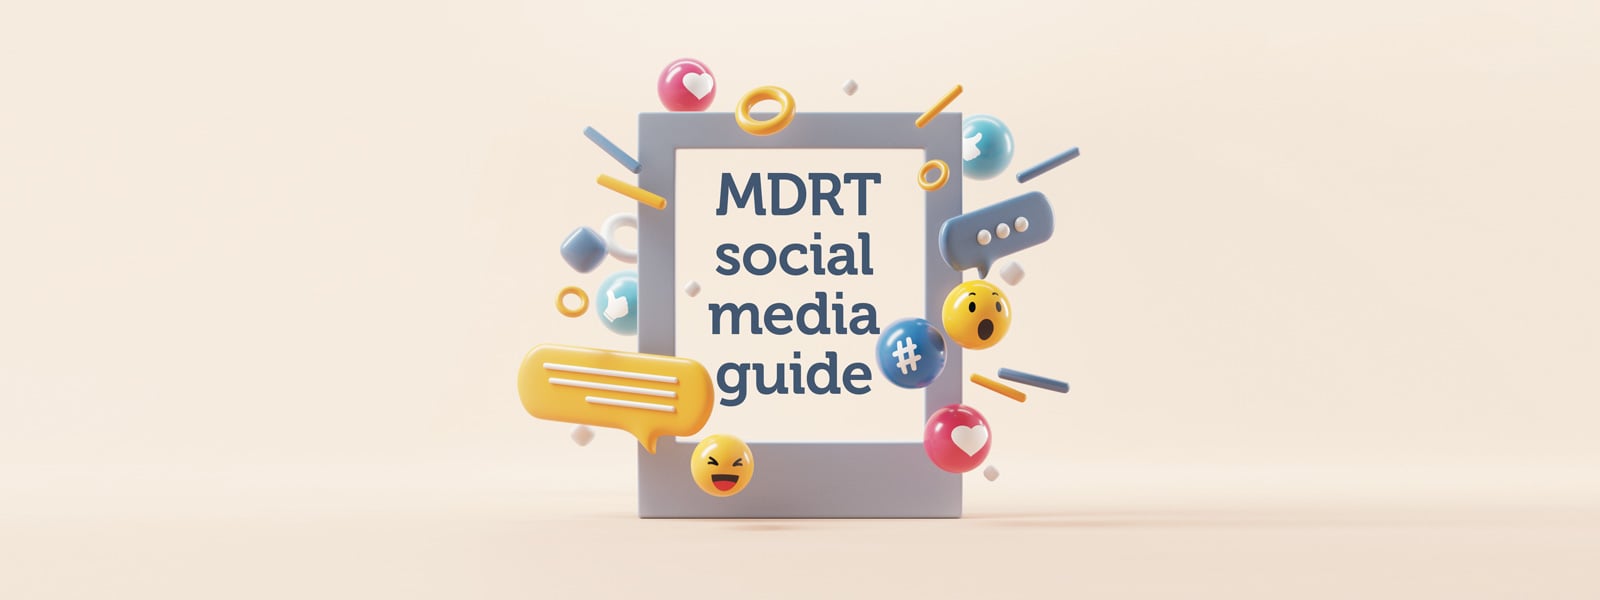 Hướng dẫn về mạng xã hội của MDRT